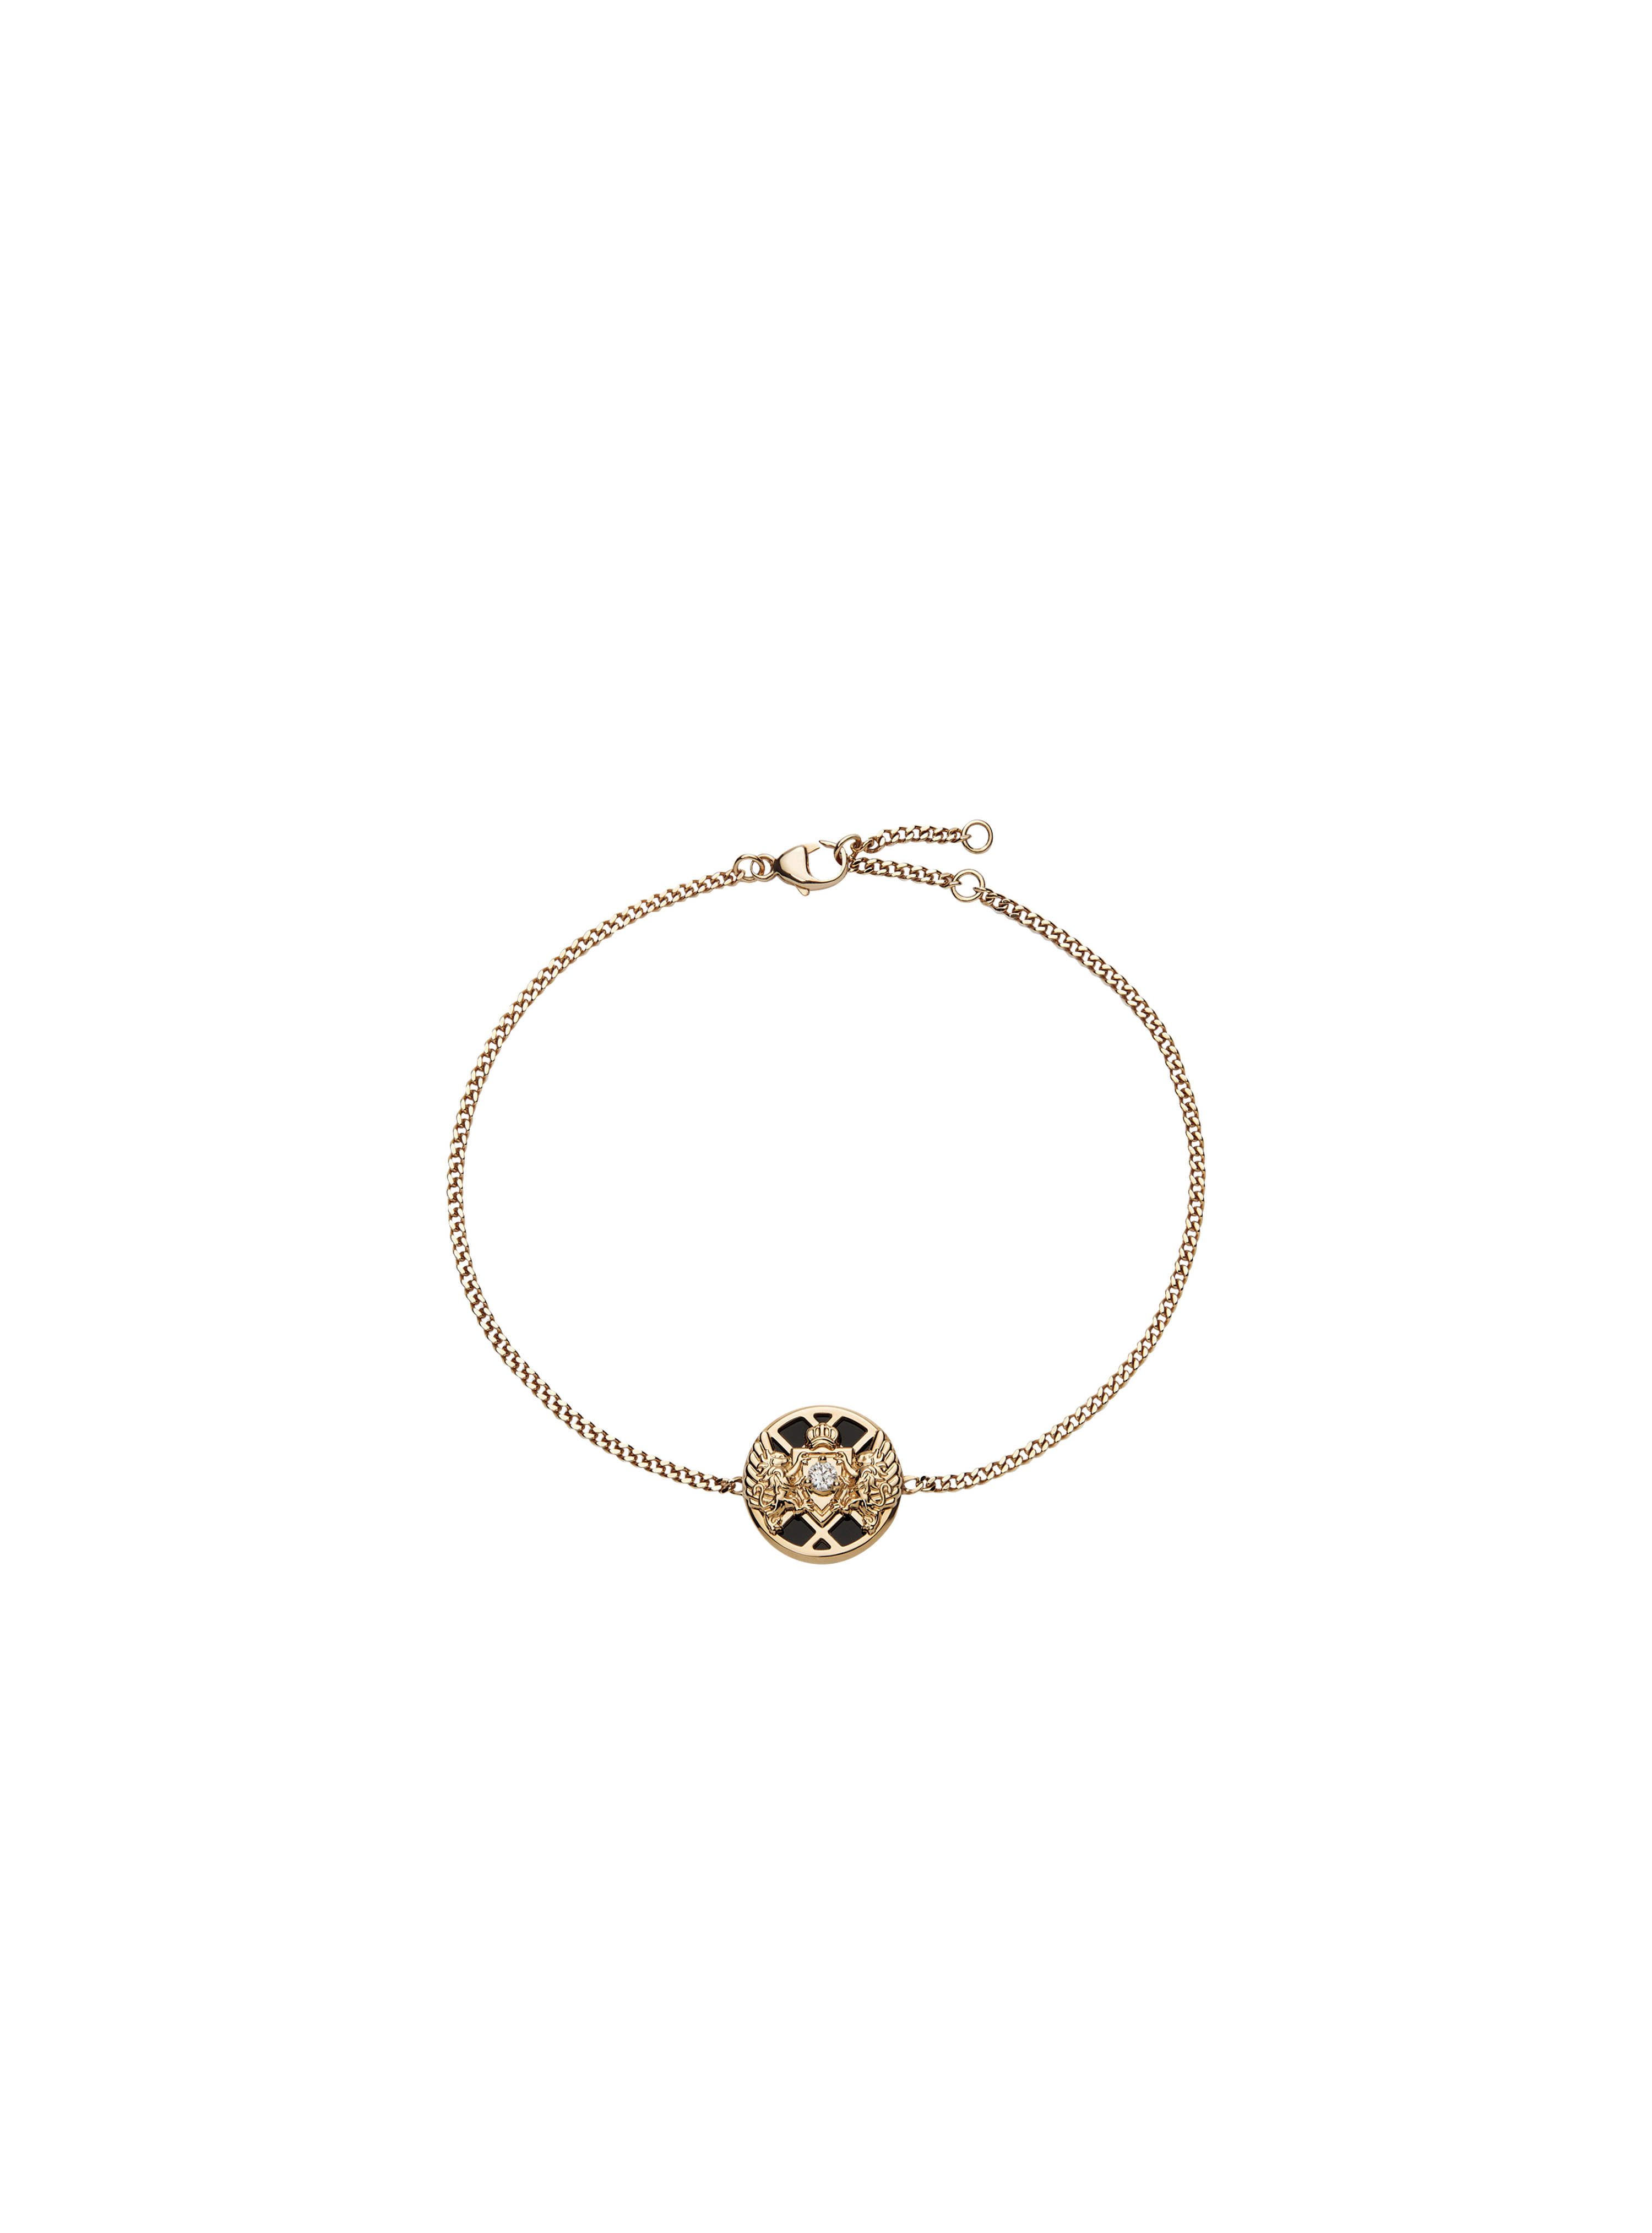 Emblem Chain Bracelet, gold